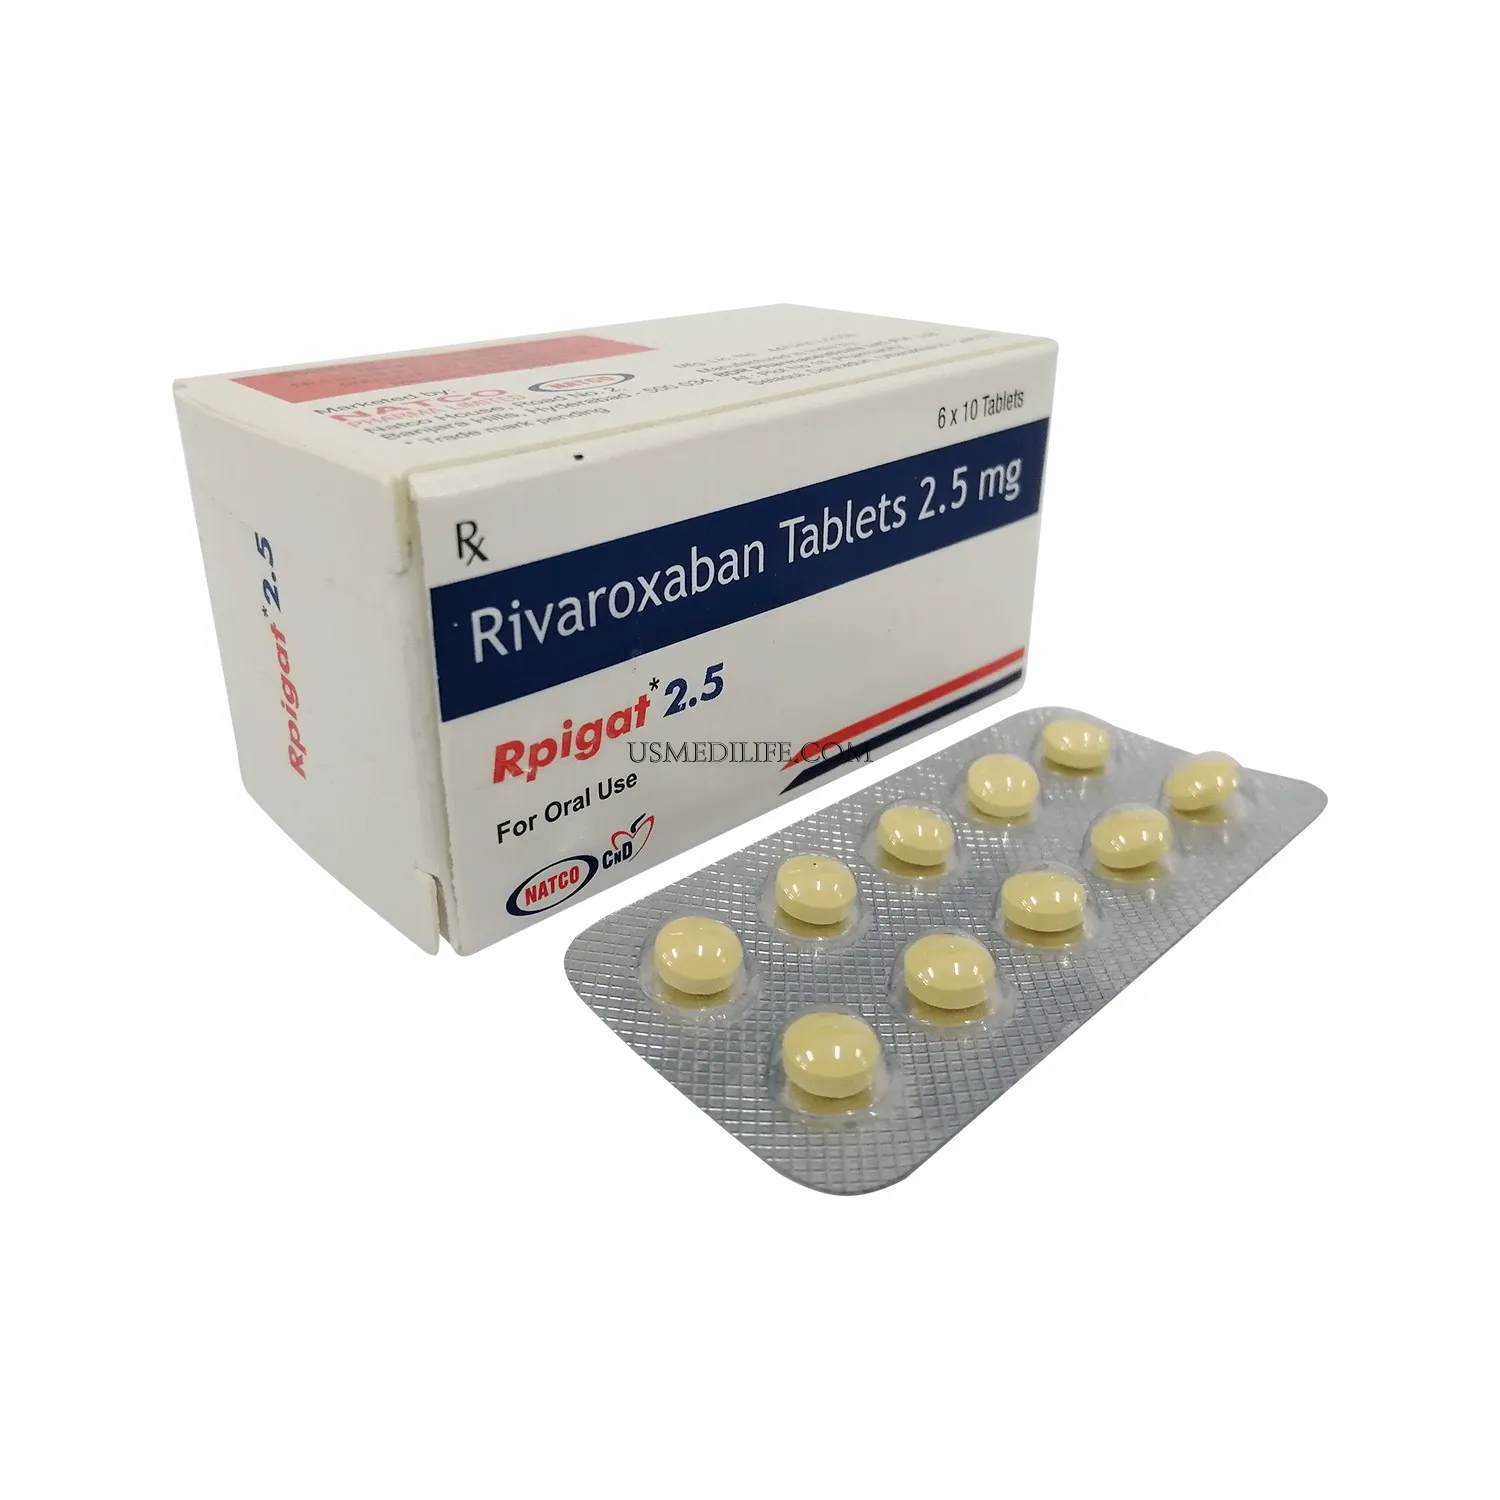 rpigat-tablets-2-5mg                    